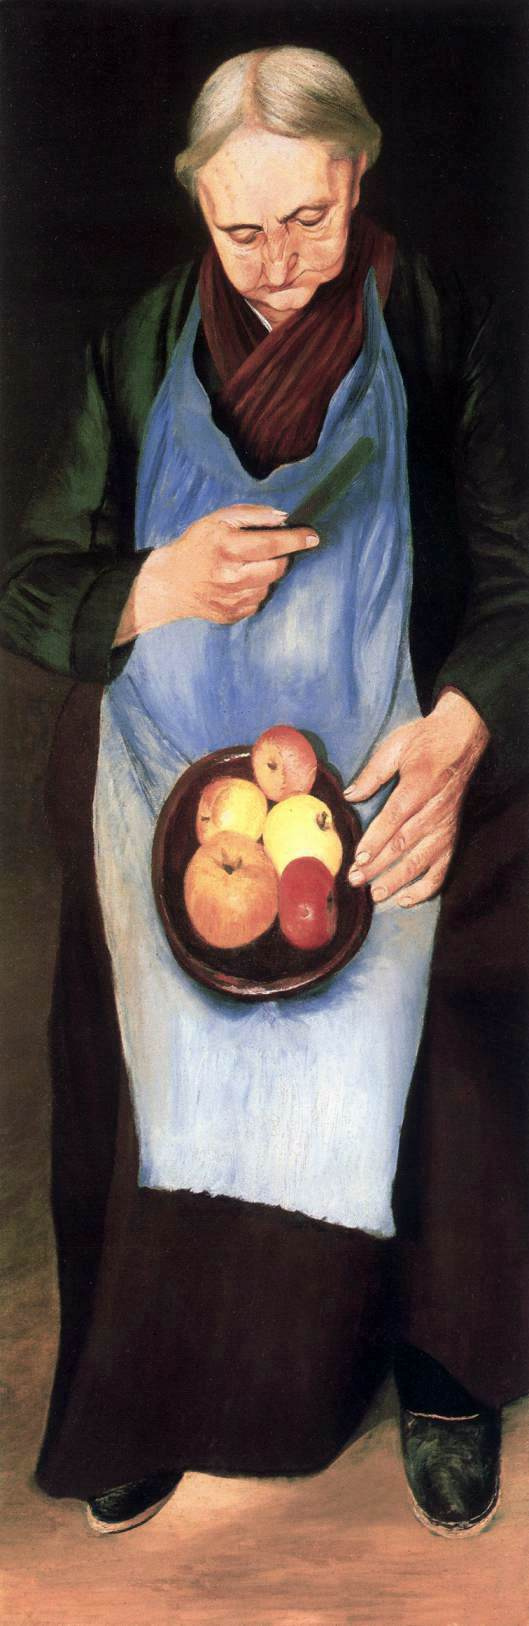 Тивадар Чонтвари Костка. Старуха с яблоками